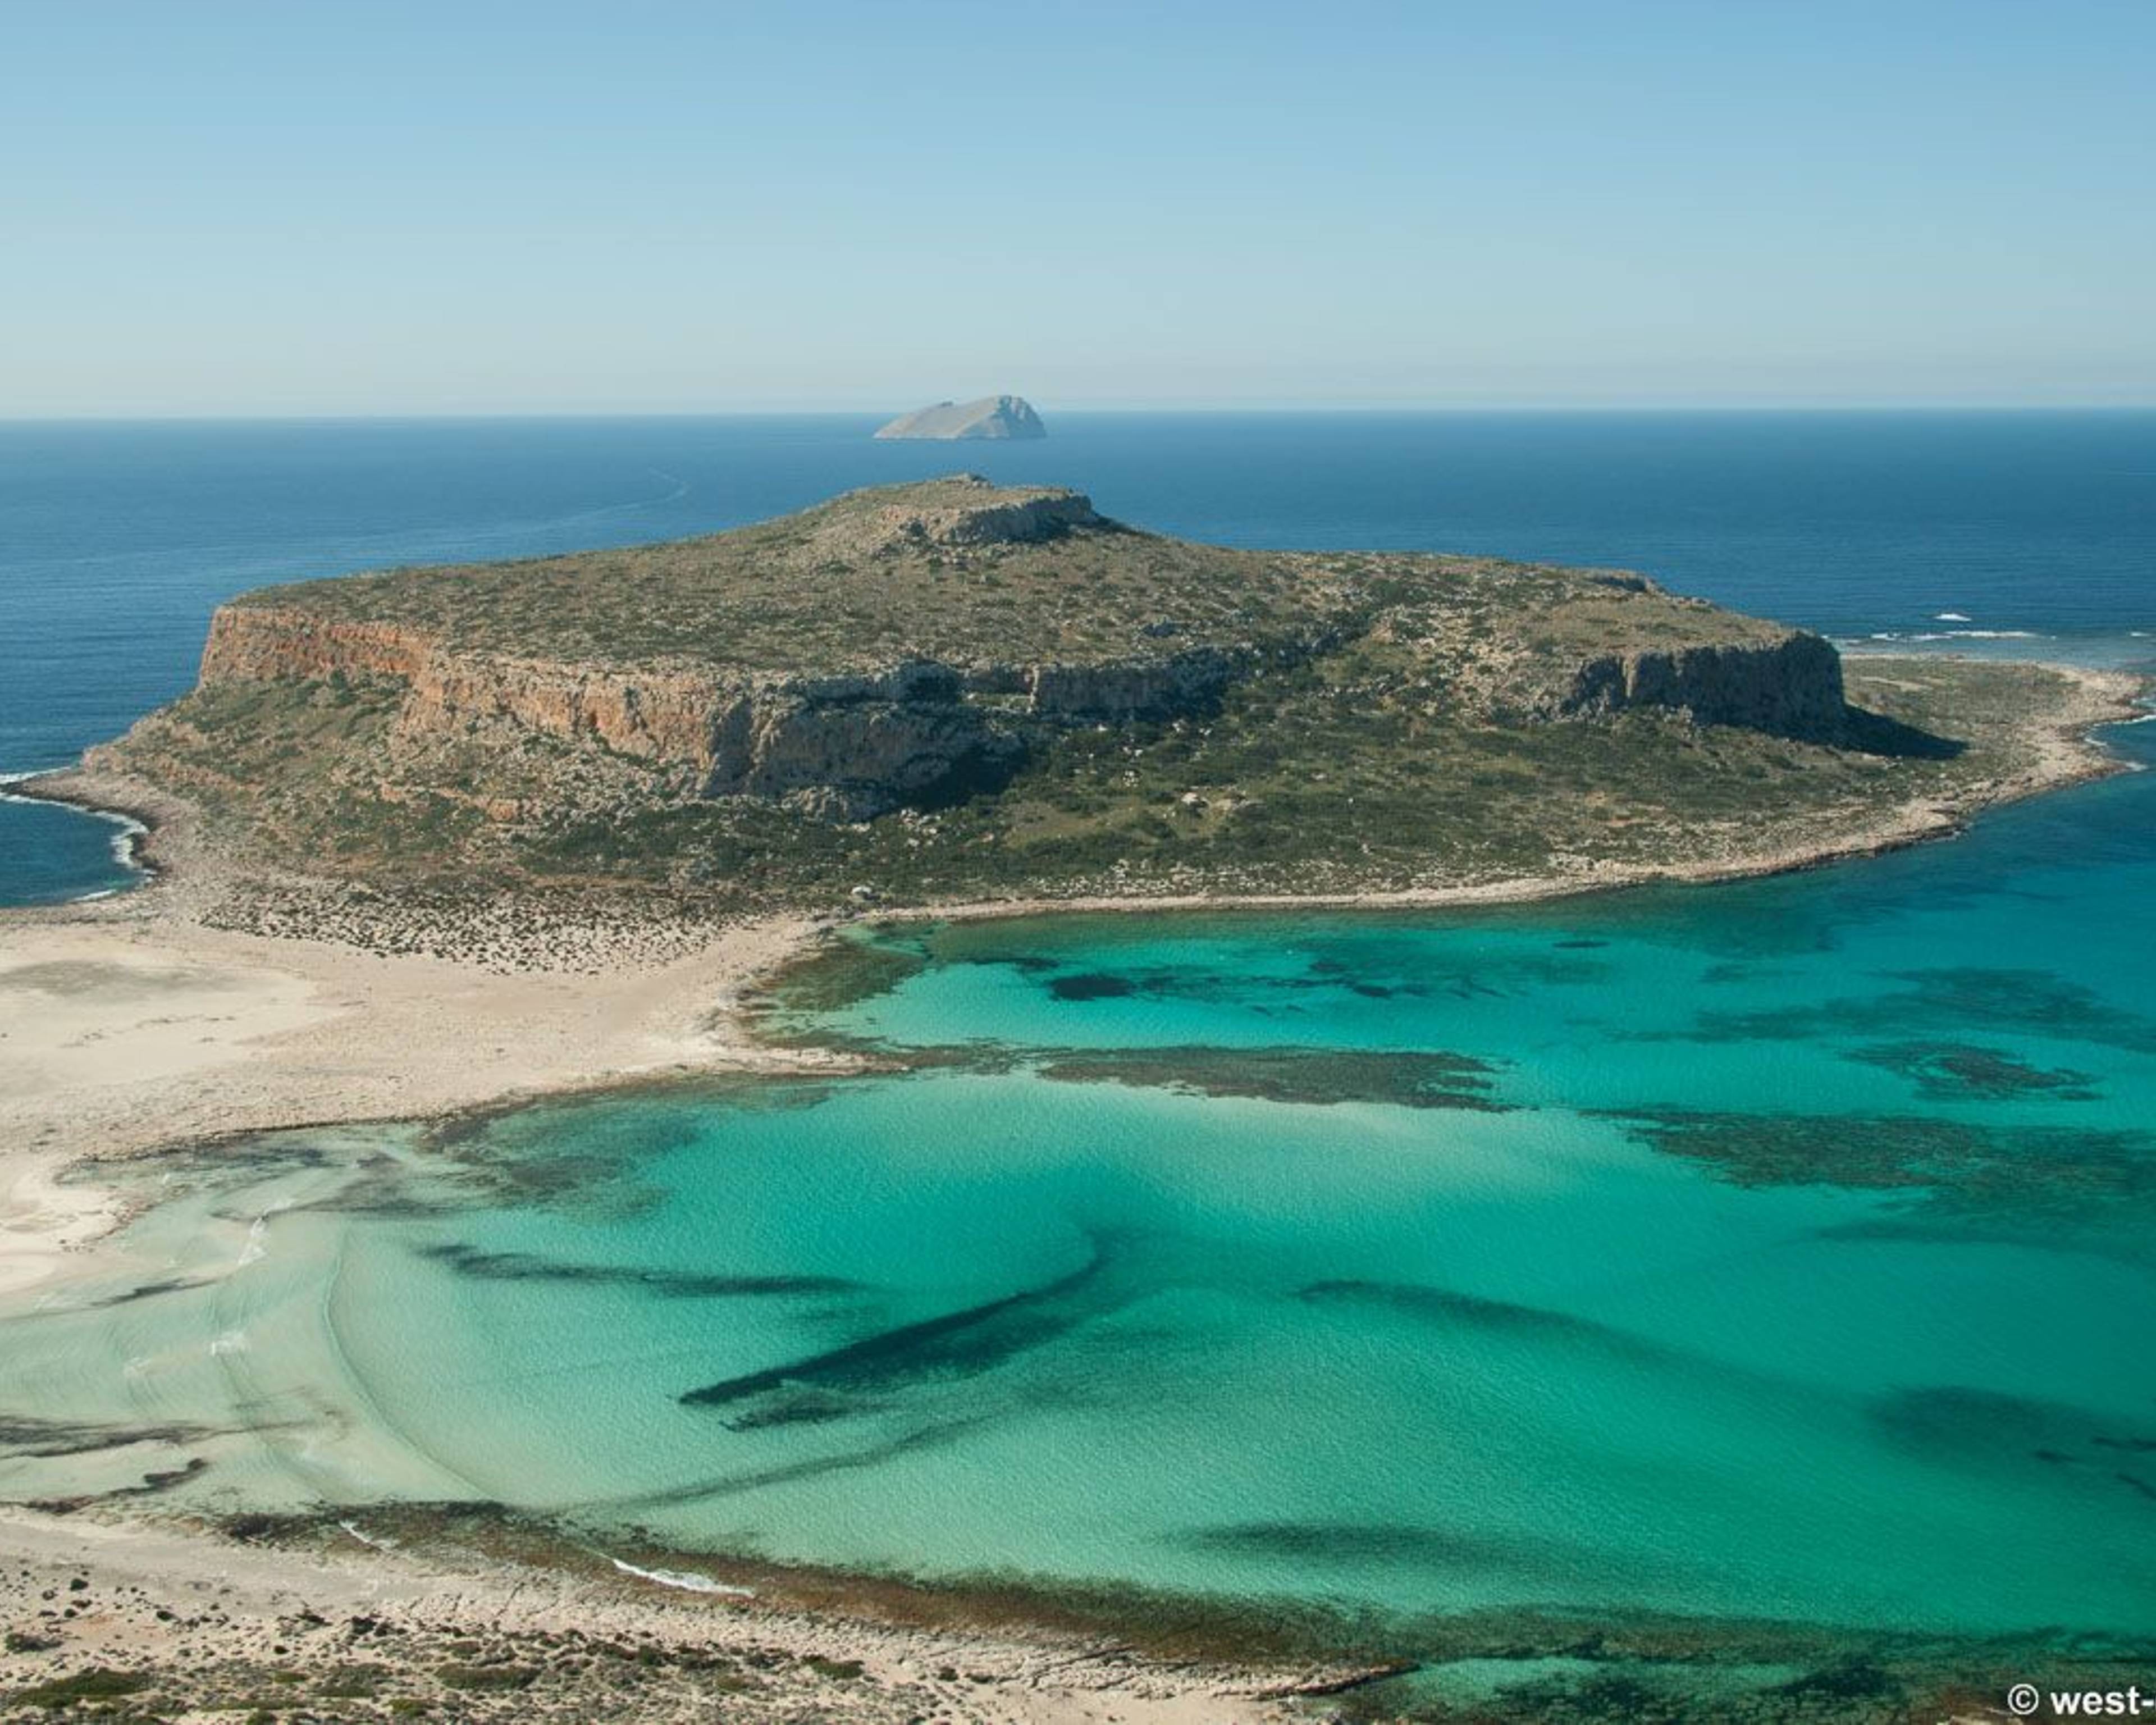 Historia, cultura y playa en Creta